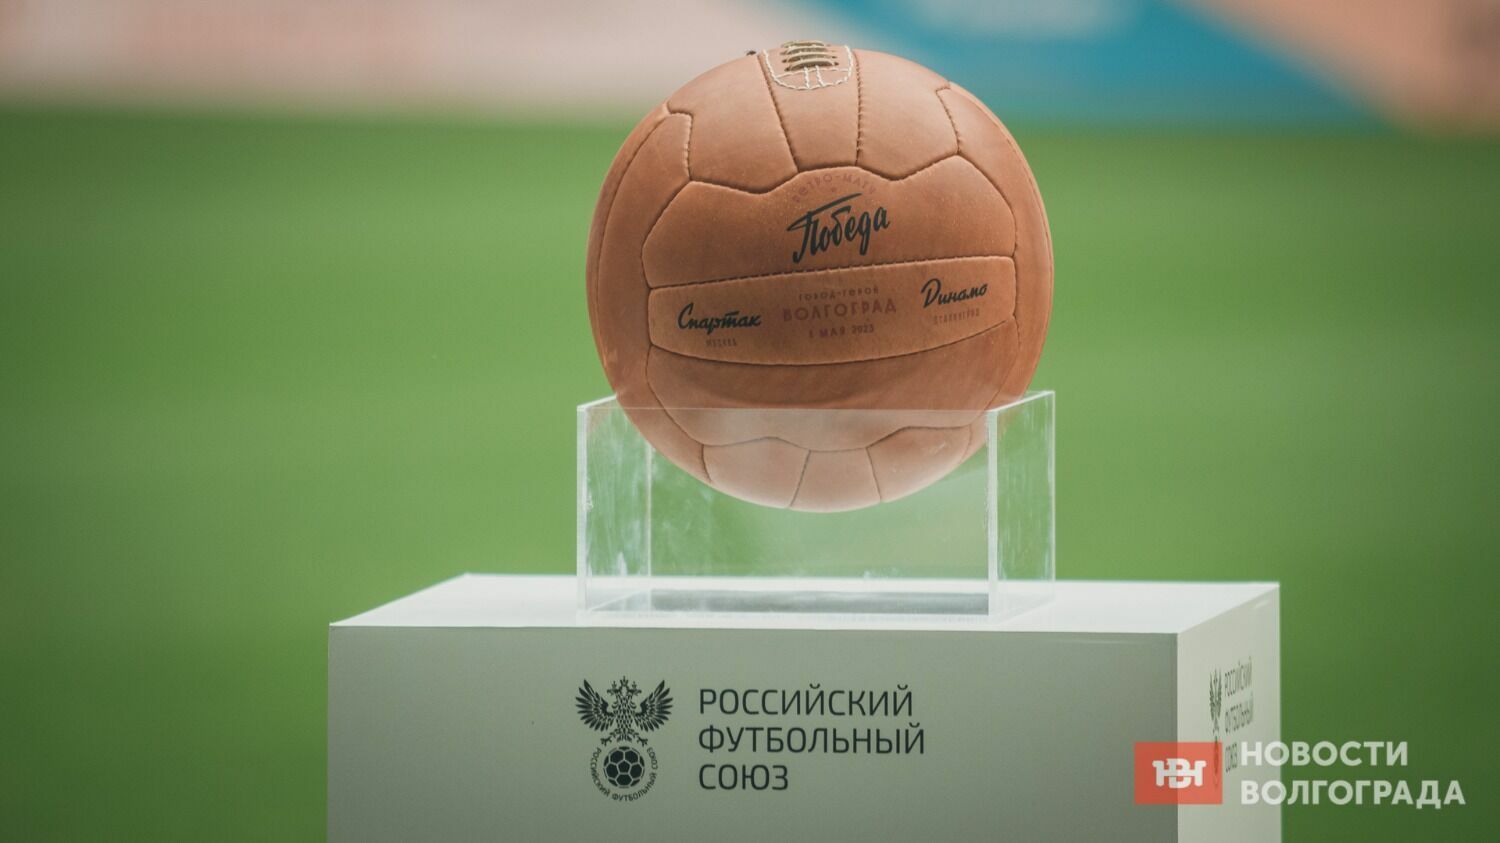 Ведущим мероприятия на стадионе «Волгоград Арена» стал известный спортивный комментатор Виктор Гусев.